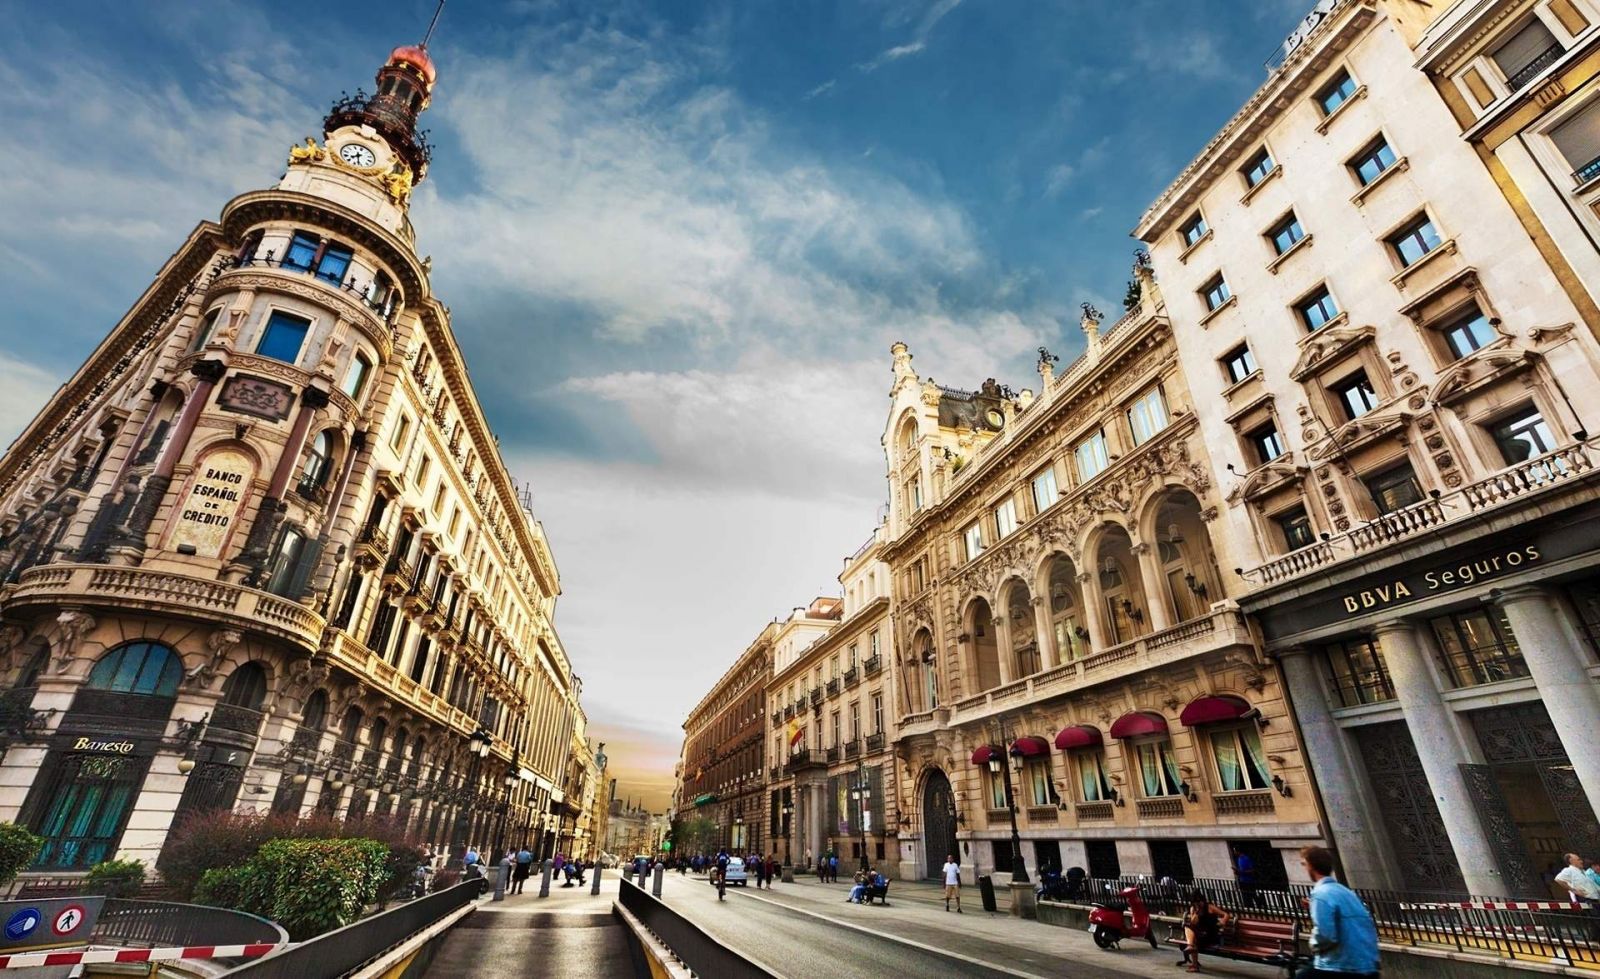 ІСПАНІЯ Сонячна, романтична і прекрасна Іспанія - вічний магніт, що притягує з року в рік мільйони туристів